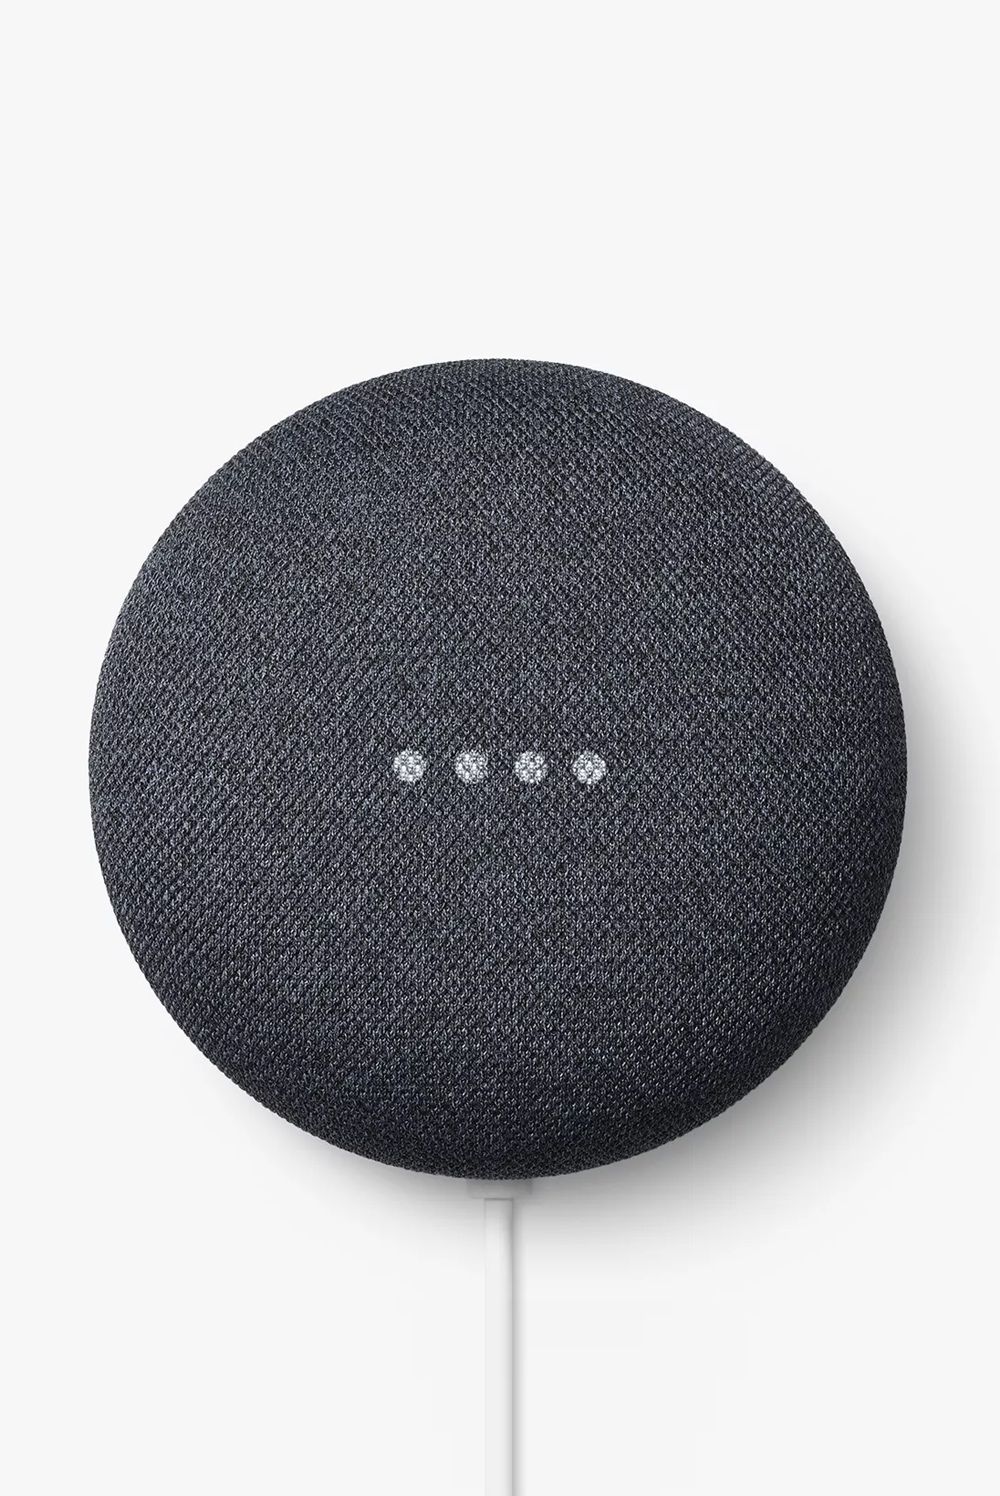 Google Nest Smart Speaker, £44